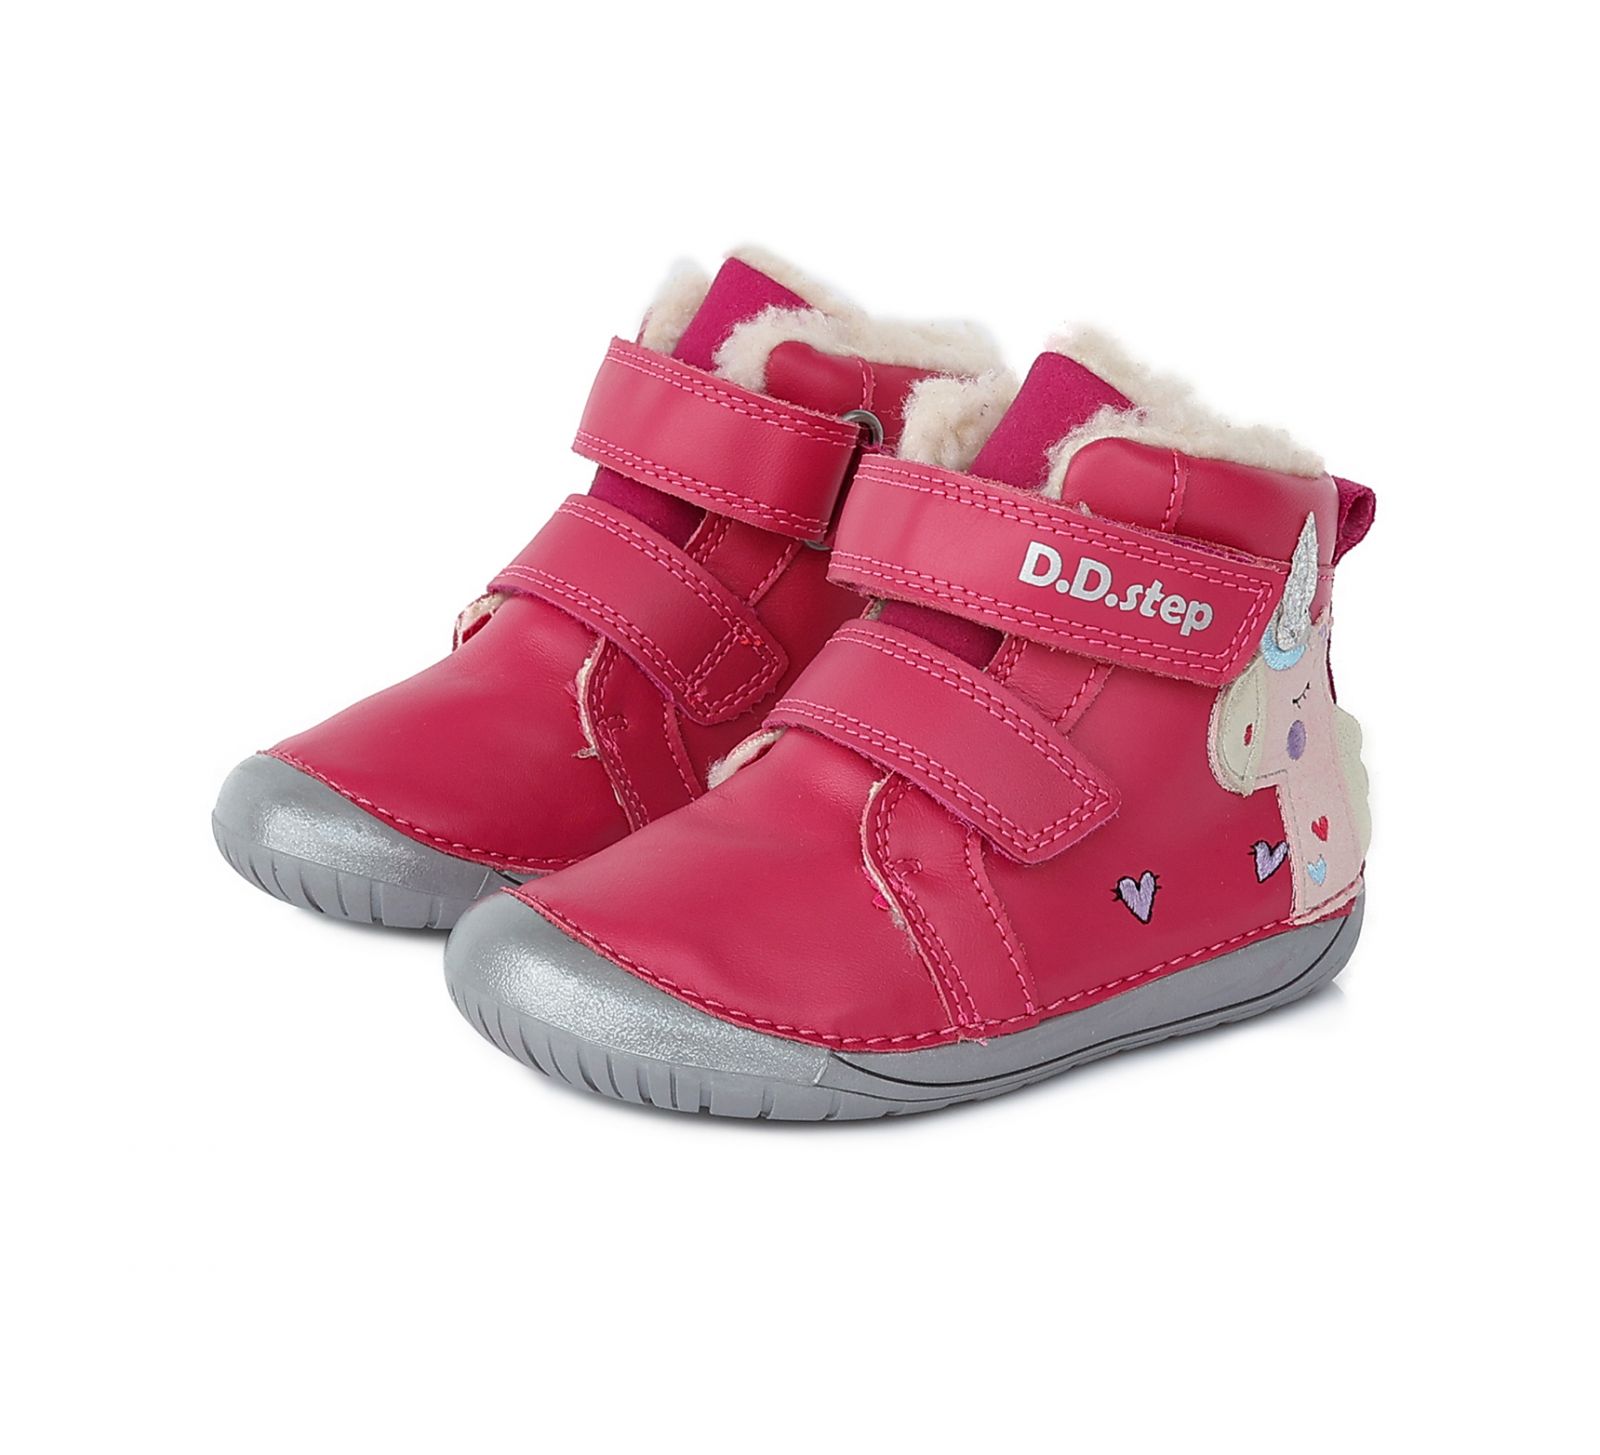 Zimné topánky DDstep 070 - ružové - jednorožec